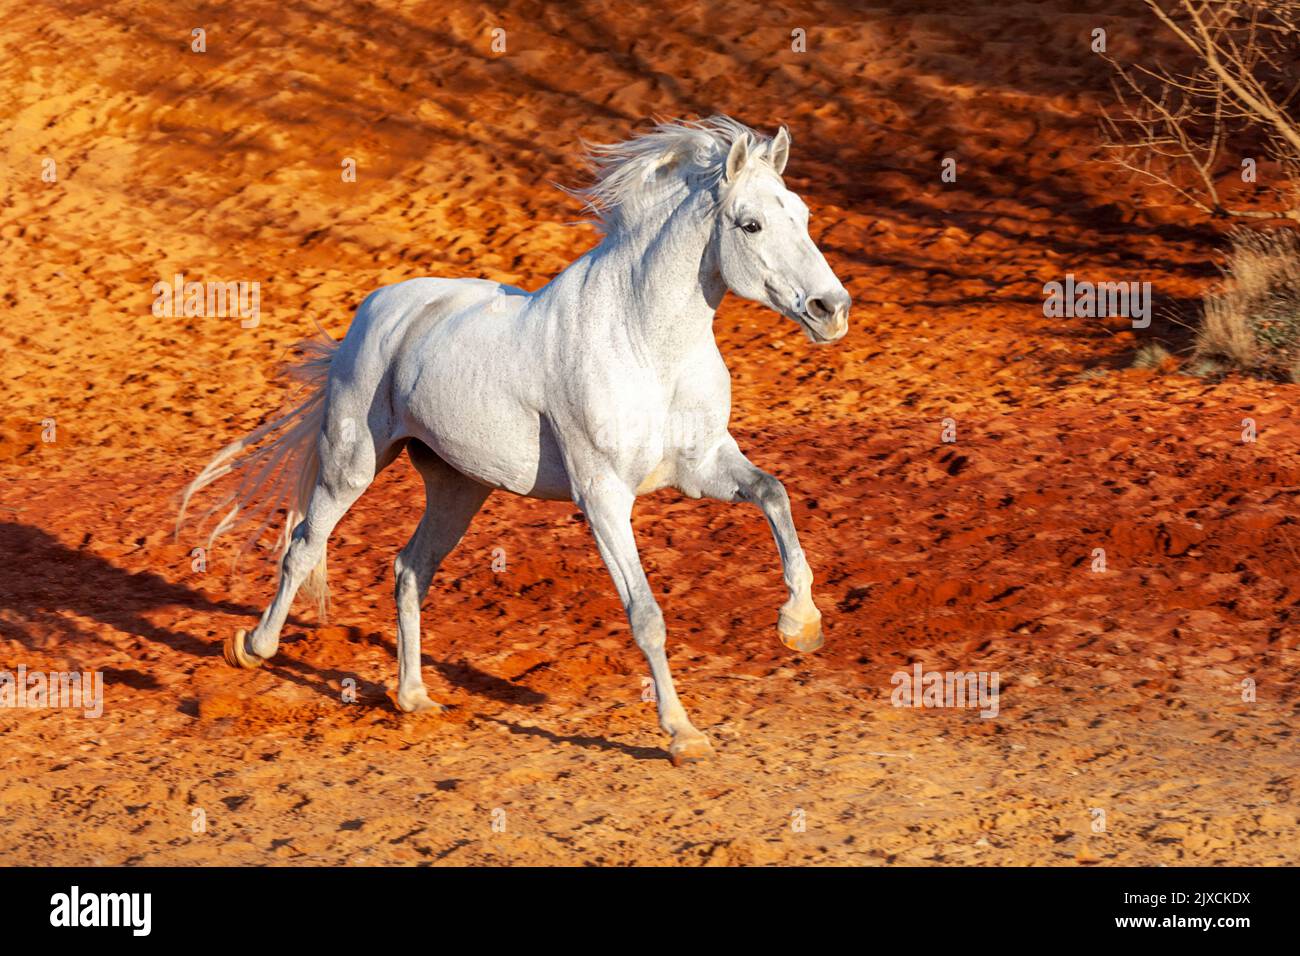 Caballo ibérico. yegua gris galopando en arena ocre. Camargue, Francia Foto de stock